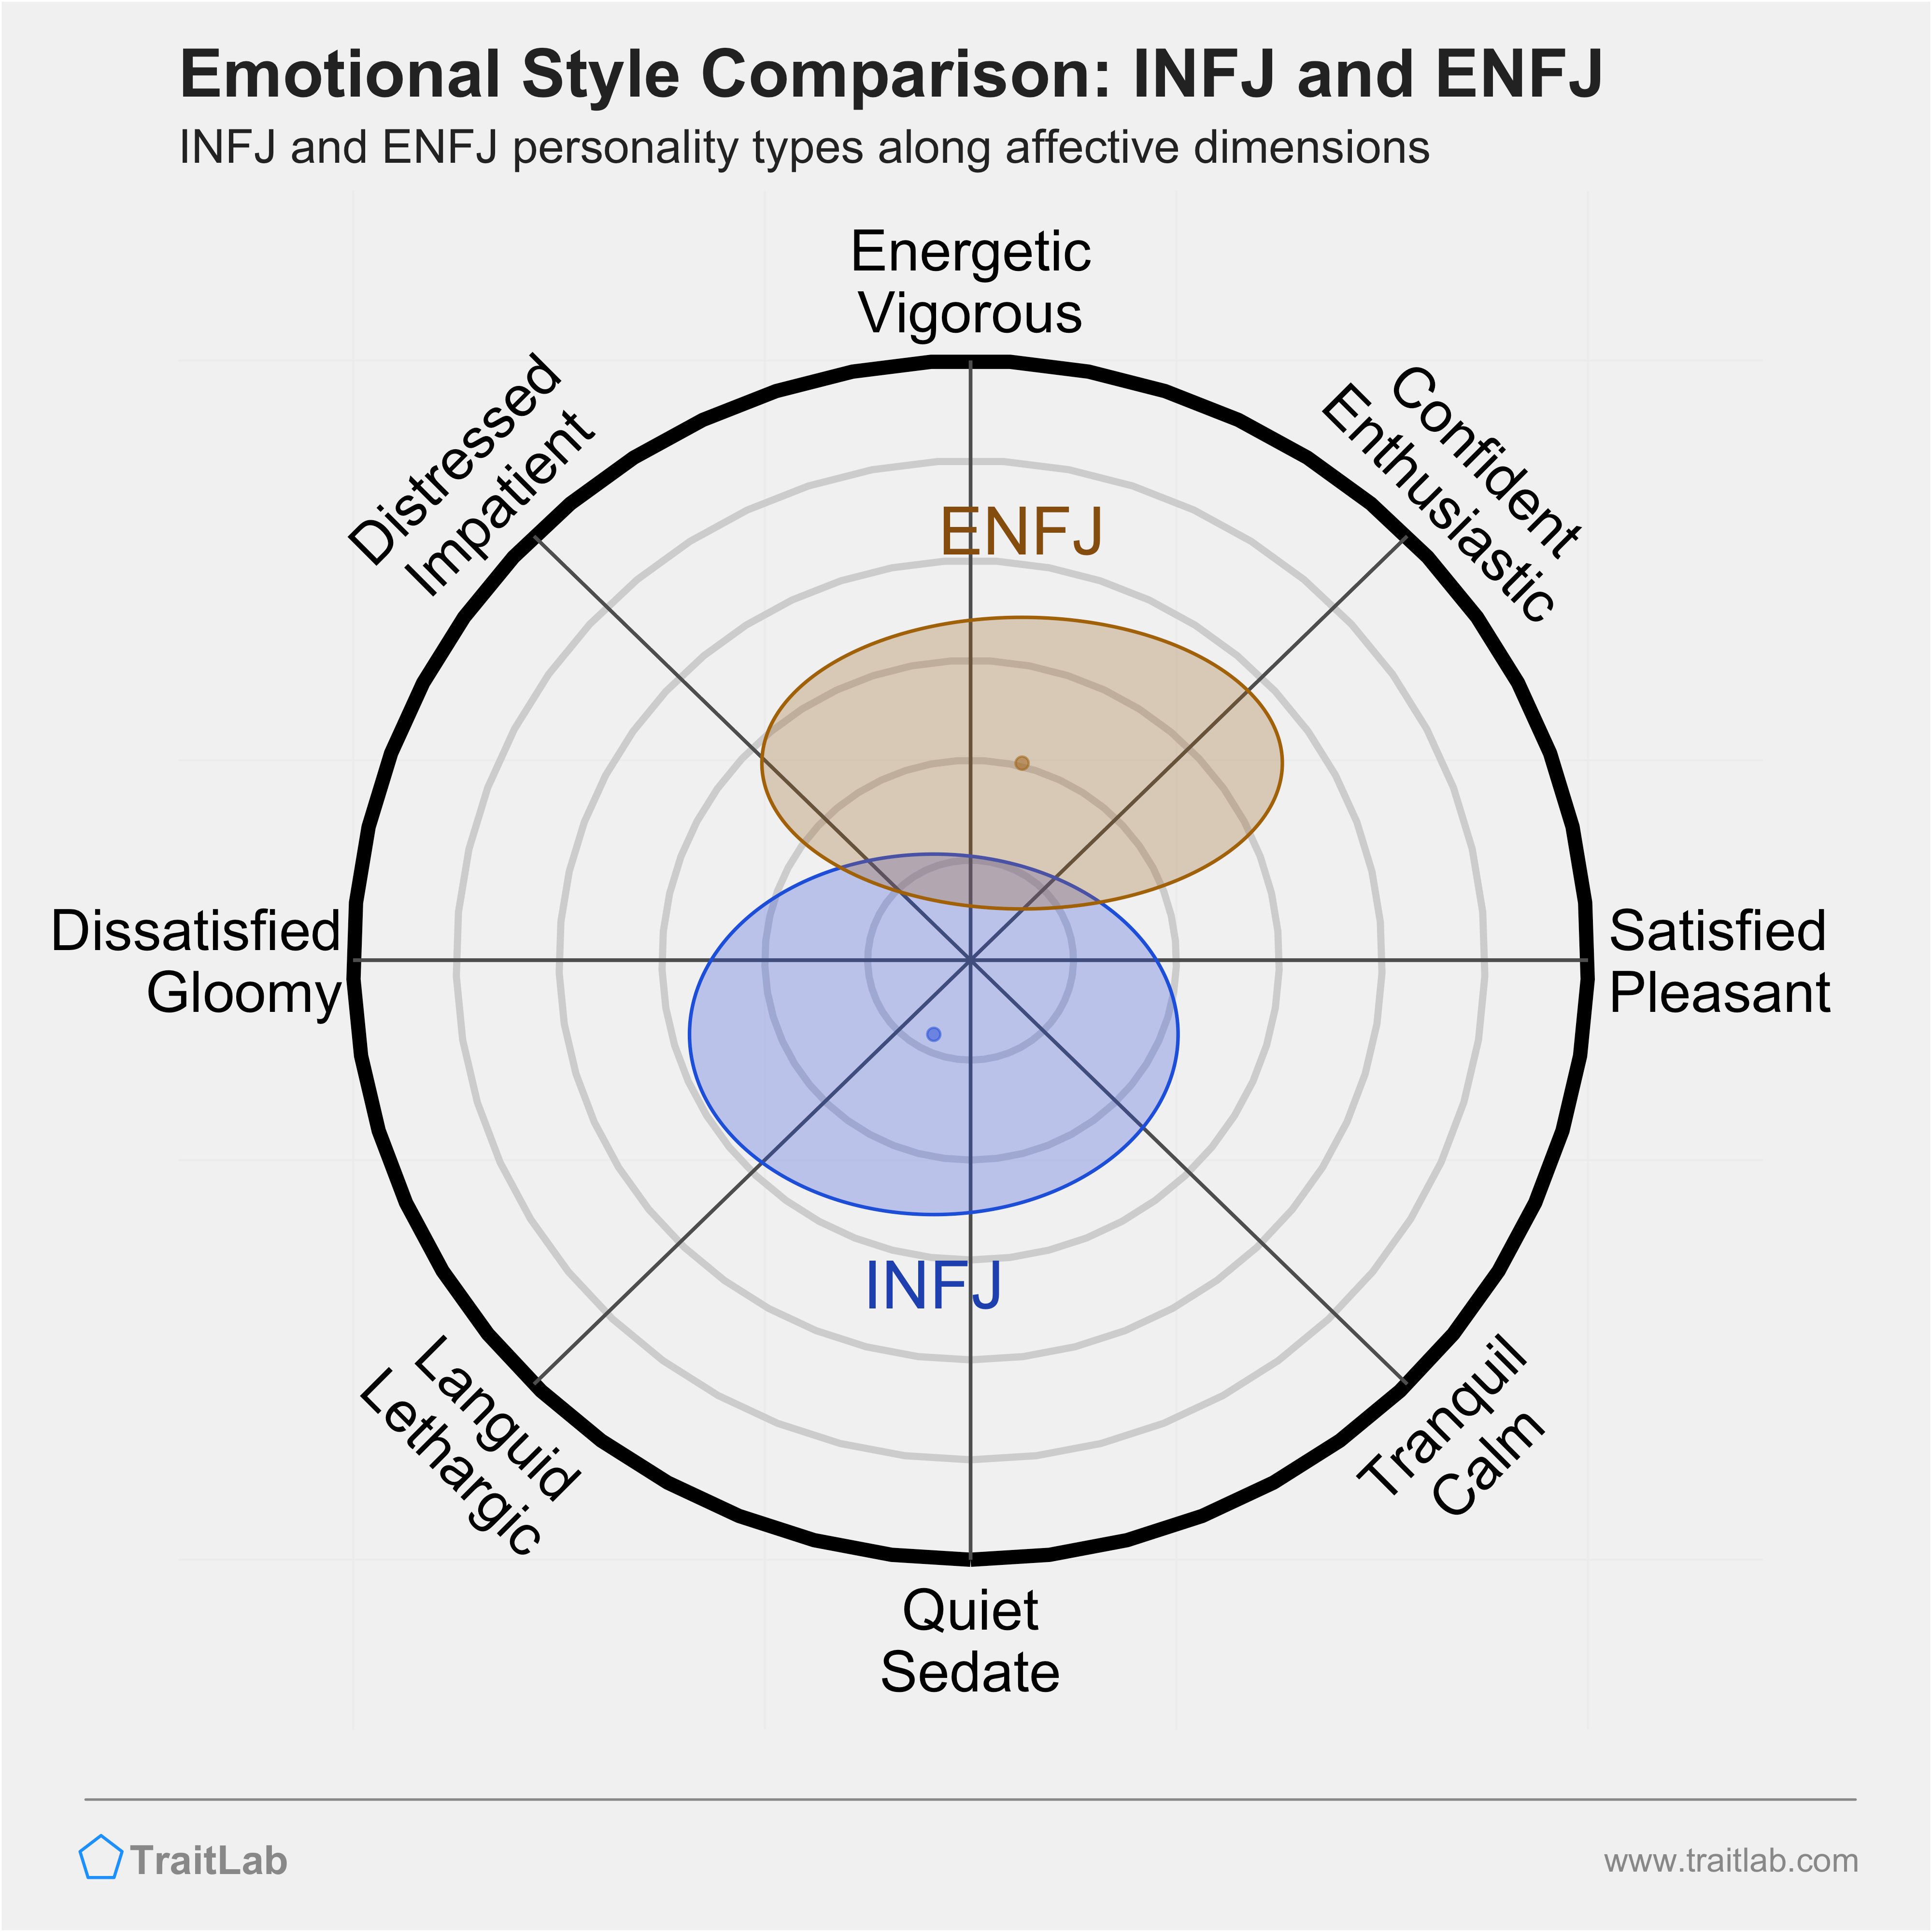 INFJ and ENFJ comparison across emotional (affective) dimensions